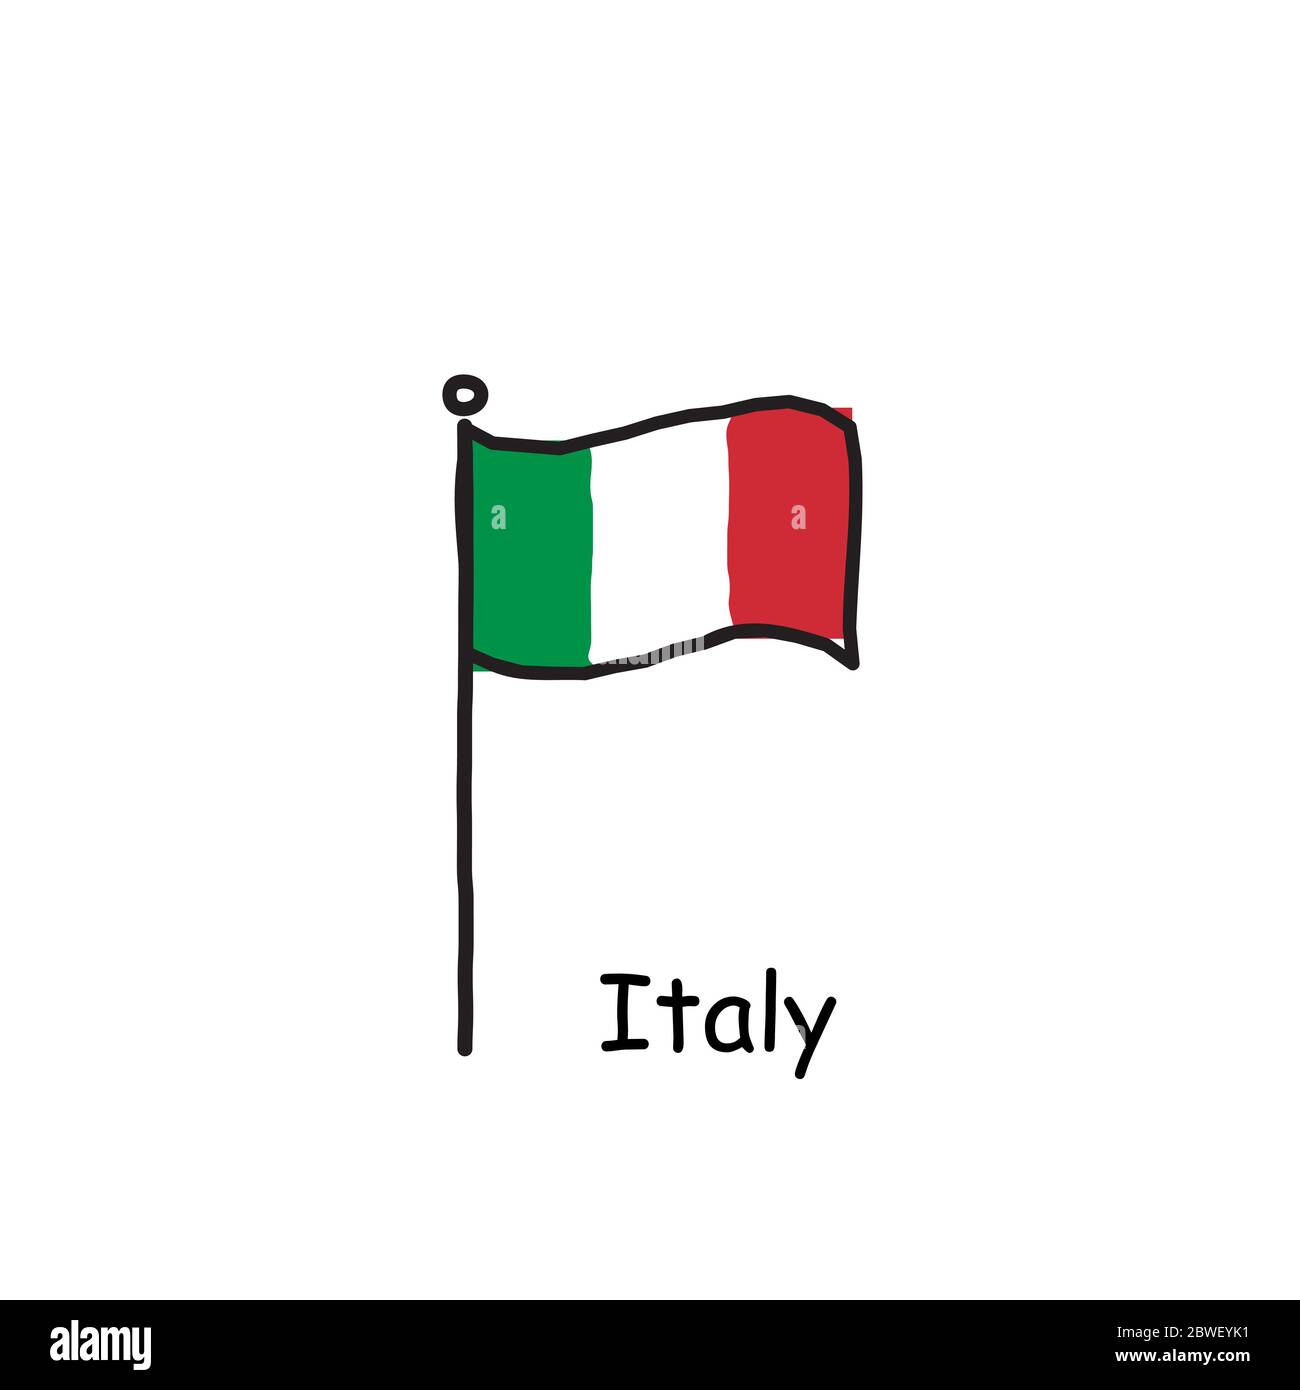 https://c8.alamy.com/compde/2bweyk1/handgezeichnet-skizzenhafte-italien-flagge-auf-der-flagge-stange-drei-farbe-flagge-stock-vektor-illustration-isoliert-auf-weissem-hintergrund-2bweyk1.jpg